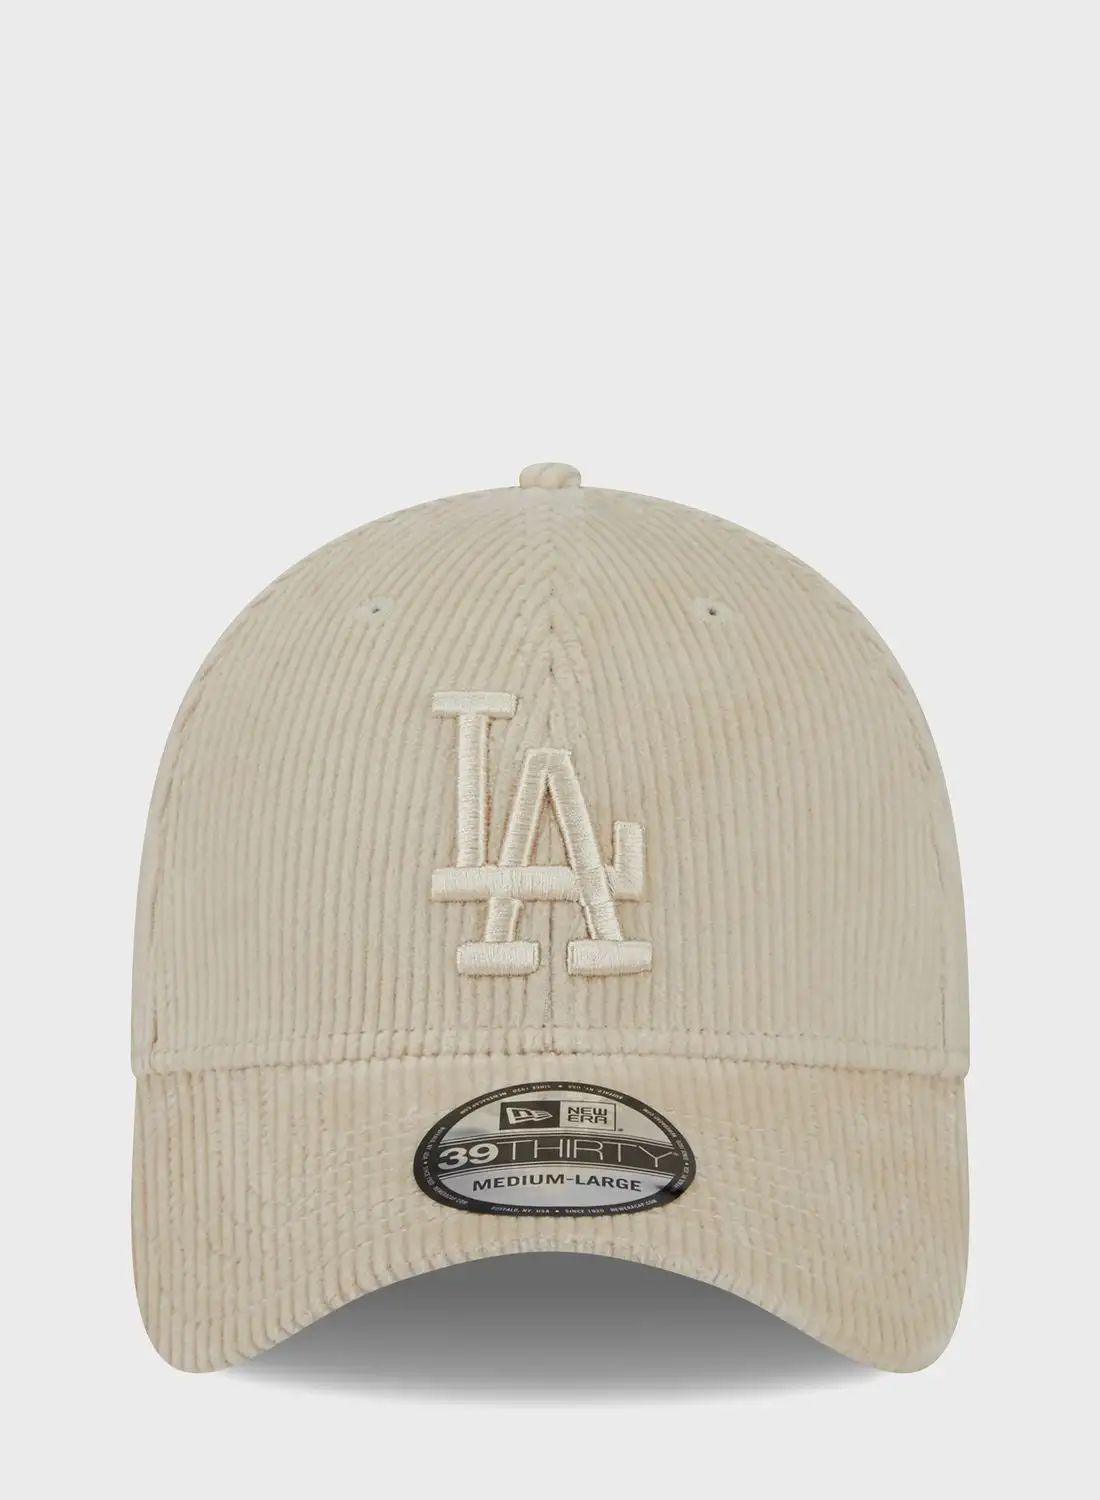 عصر جديد 39 قبعة لوس أنجلوس دودجرز